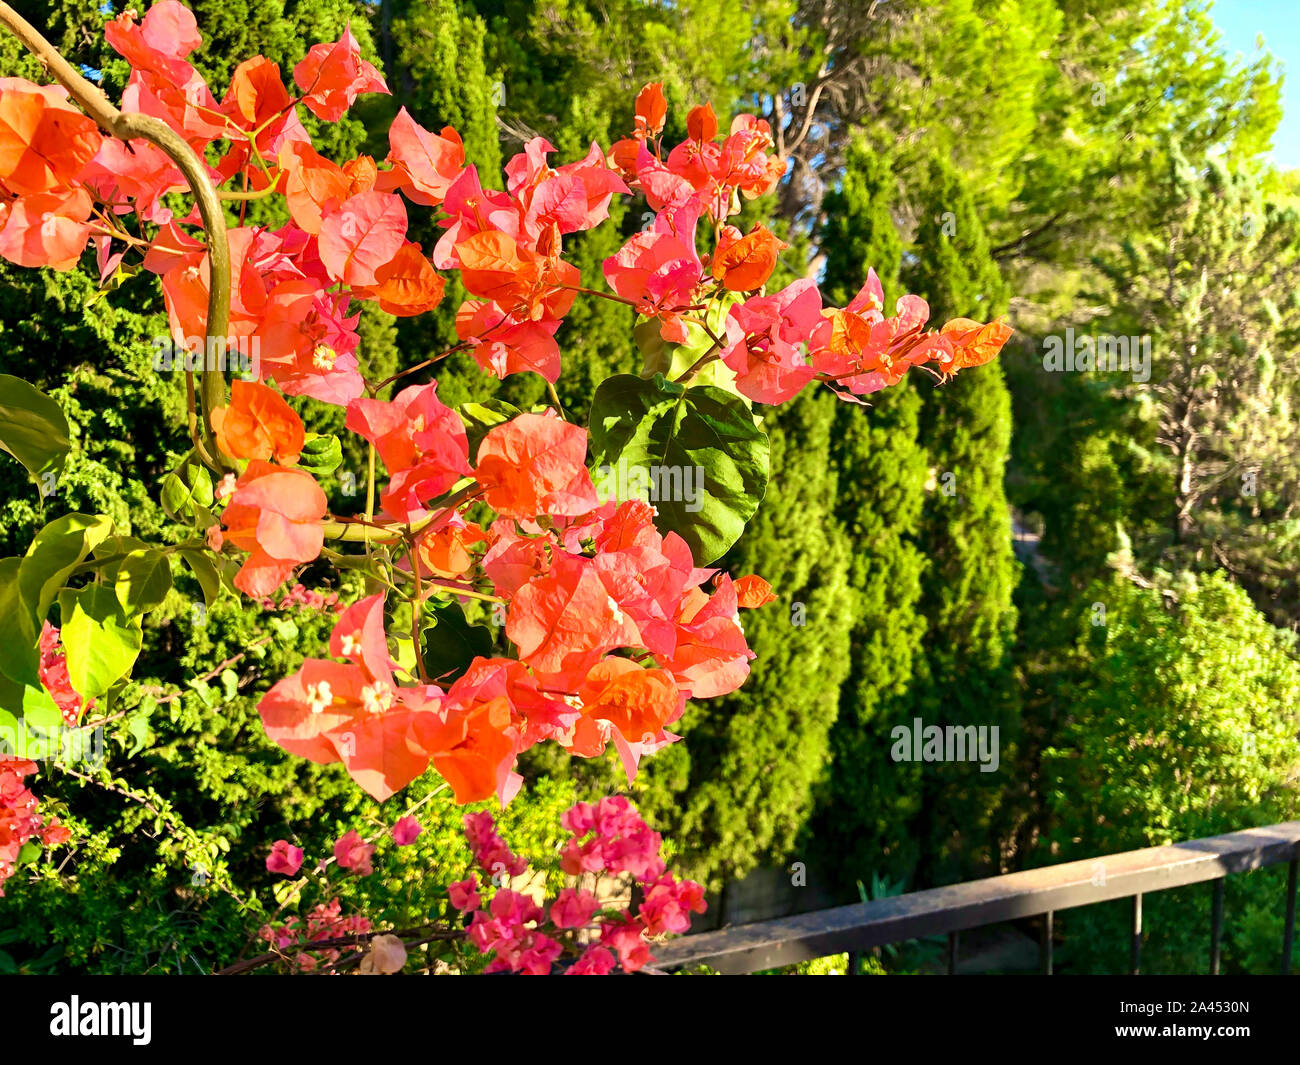 Bougainvillea flowers in a garden in Spain Stock Photo